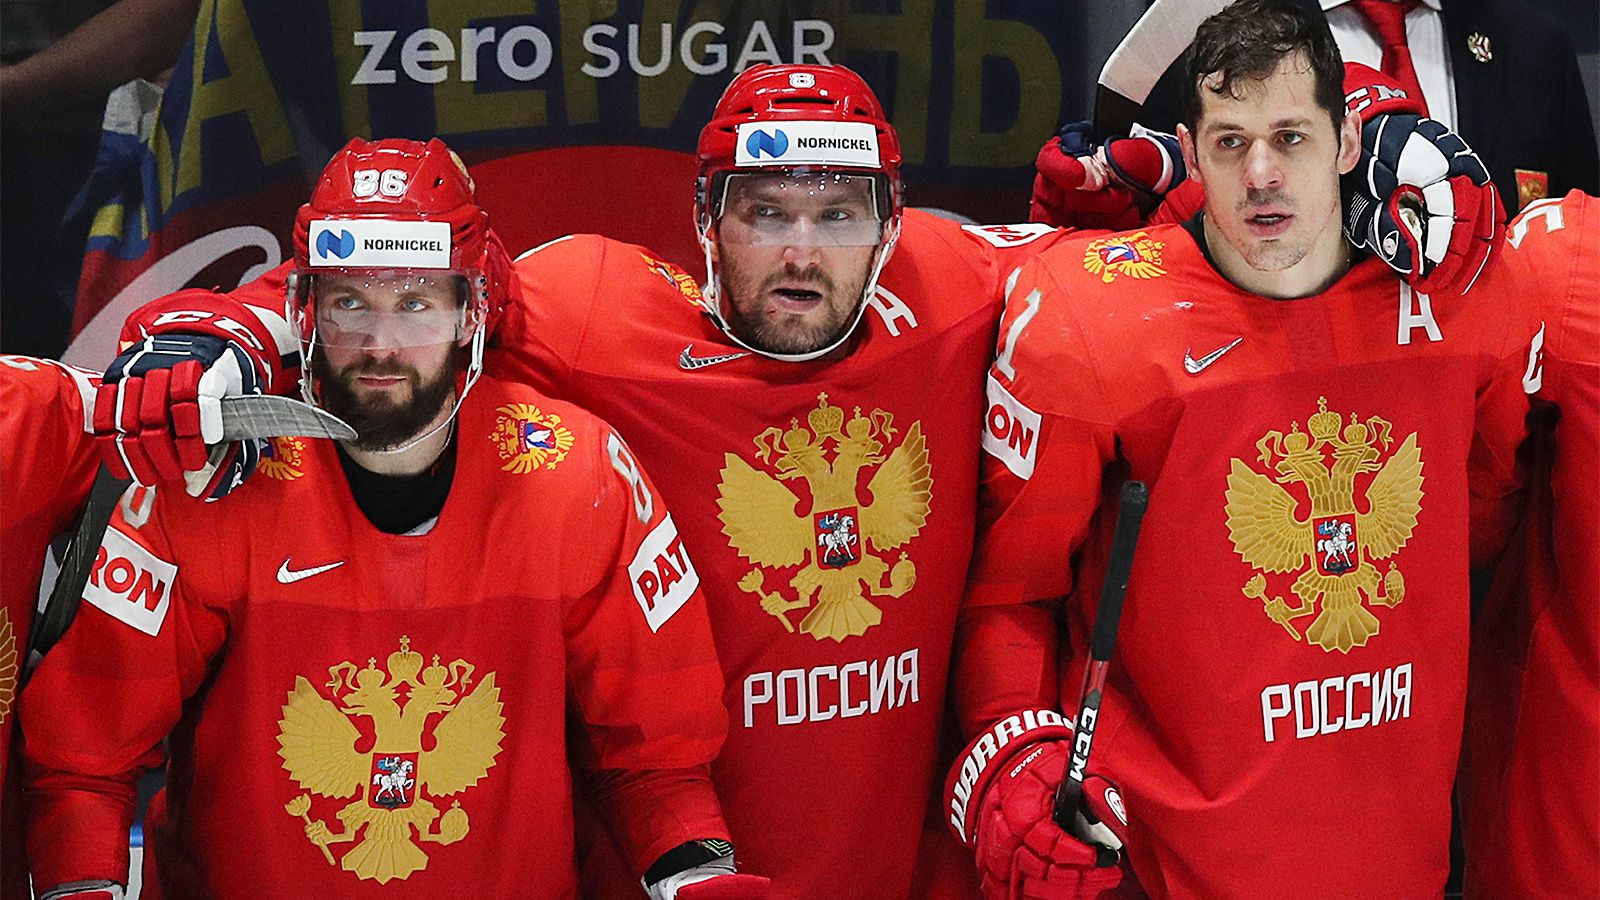 Бирюков заявил, что перестал смотреть ЧМ по хоккею из-за отсутствия россиян